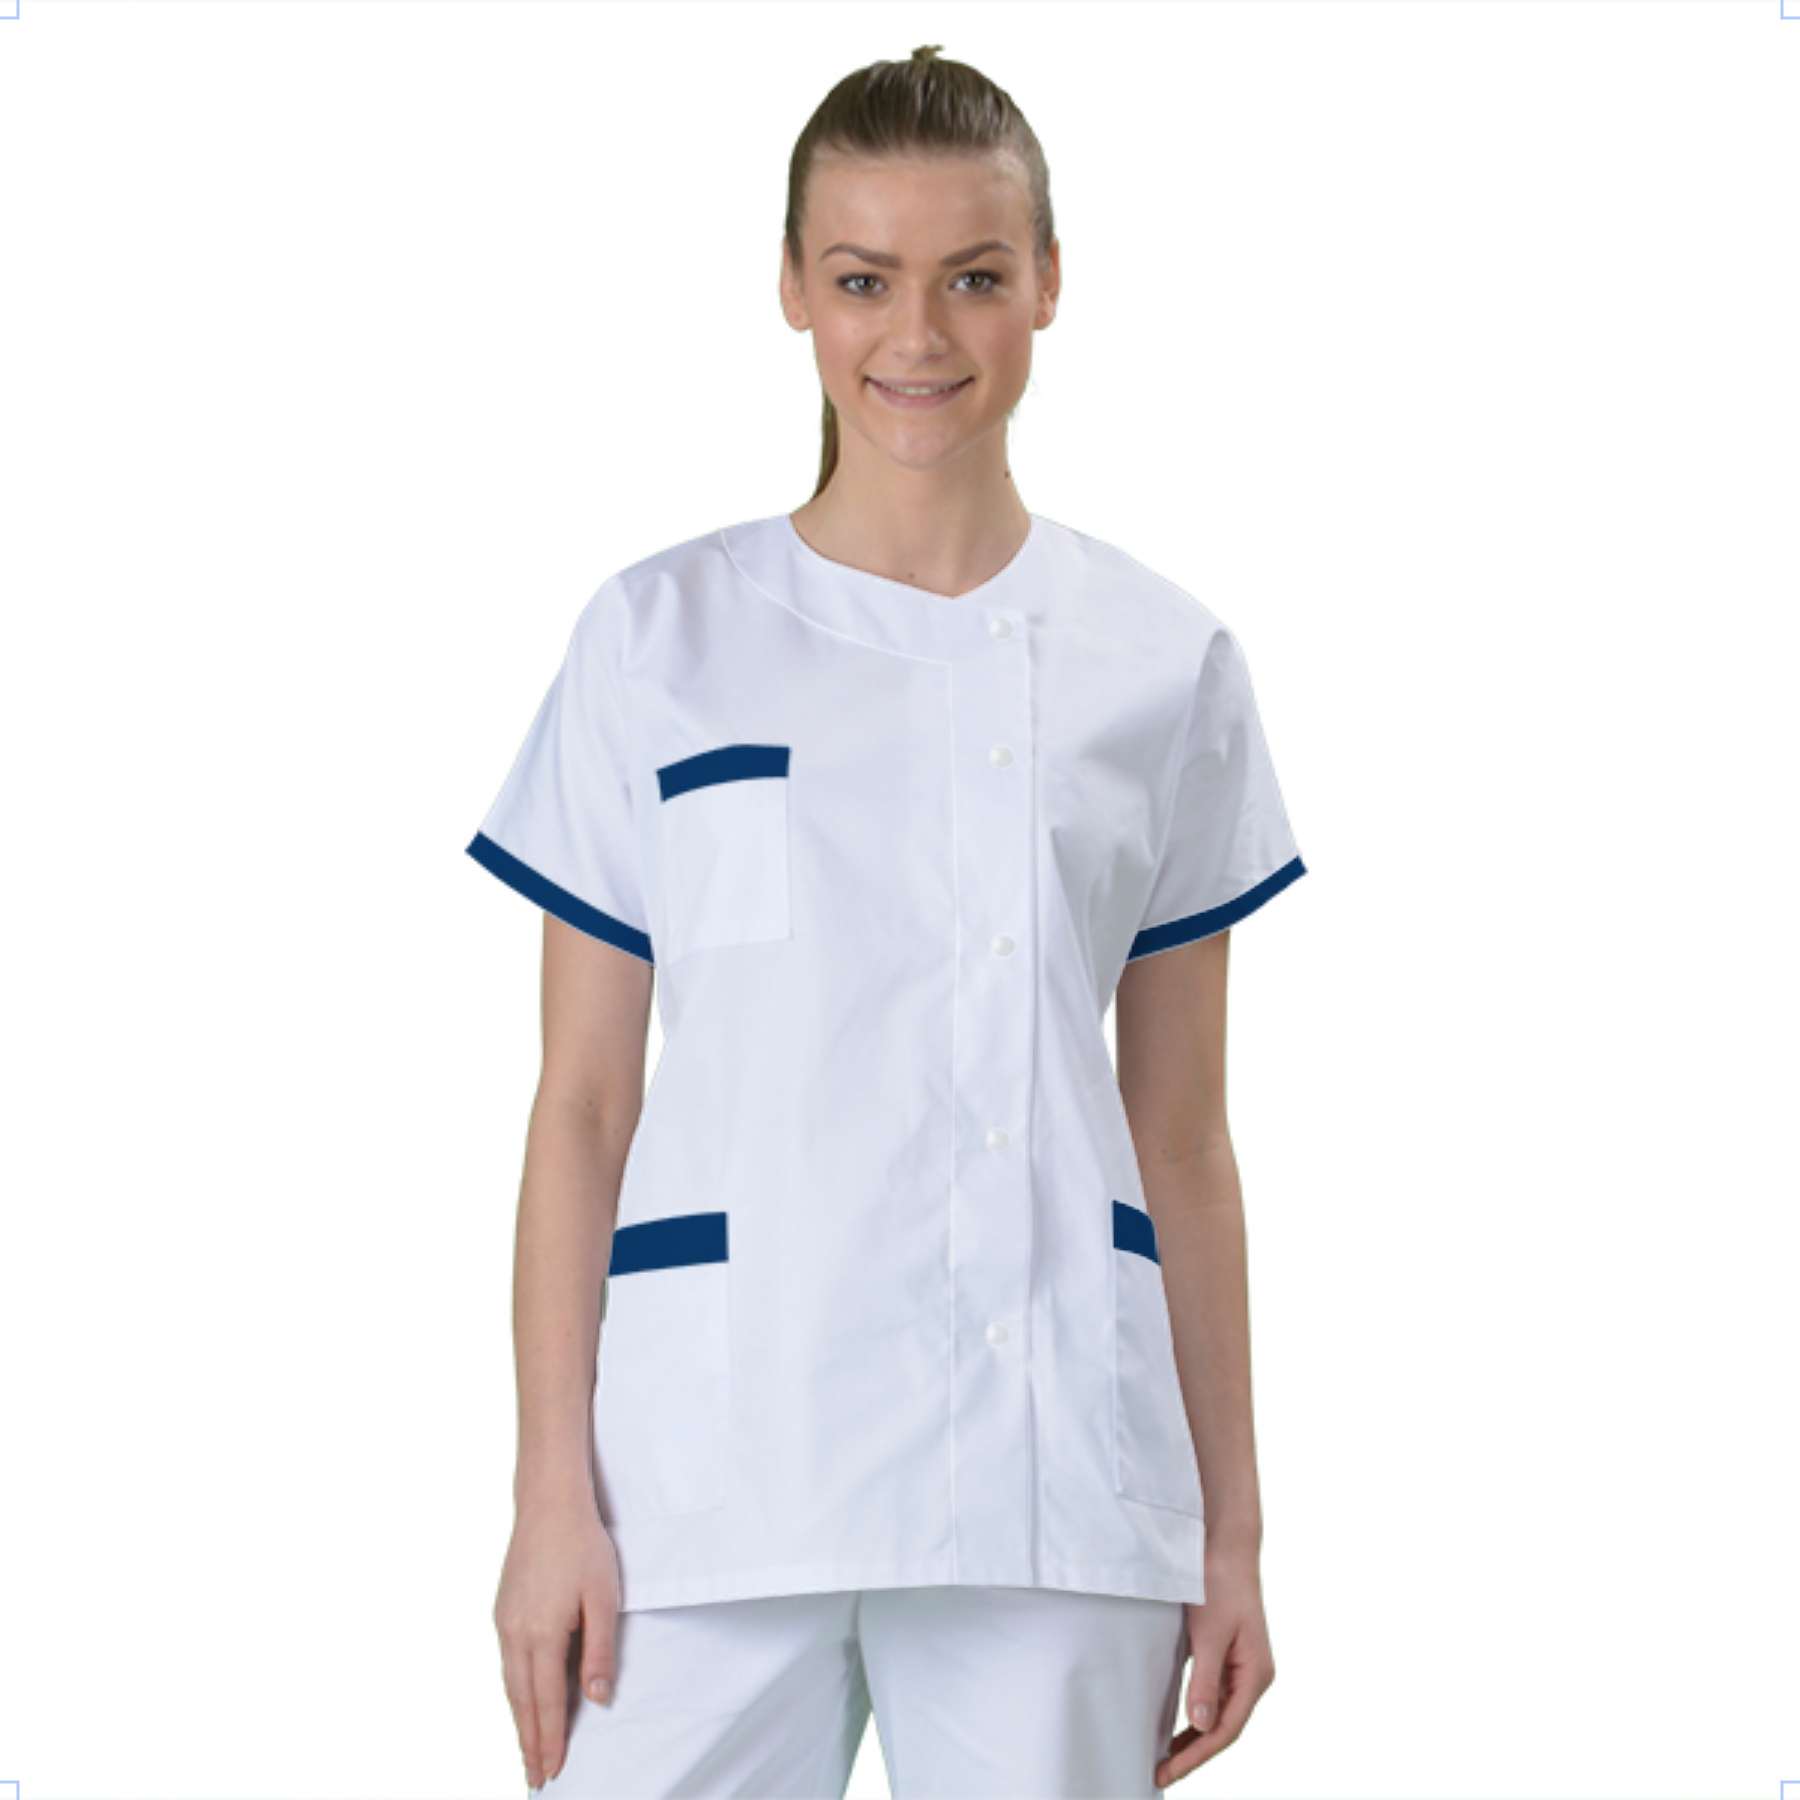 blouse-medicale-col-carre-a-personnaliser acheté - par Myriam - le 16-01-2019